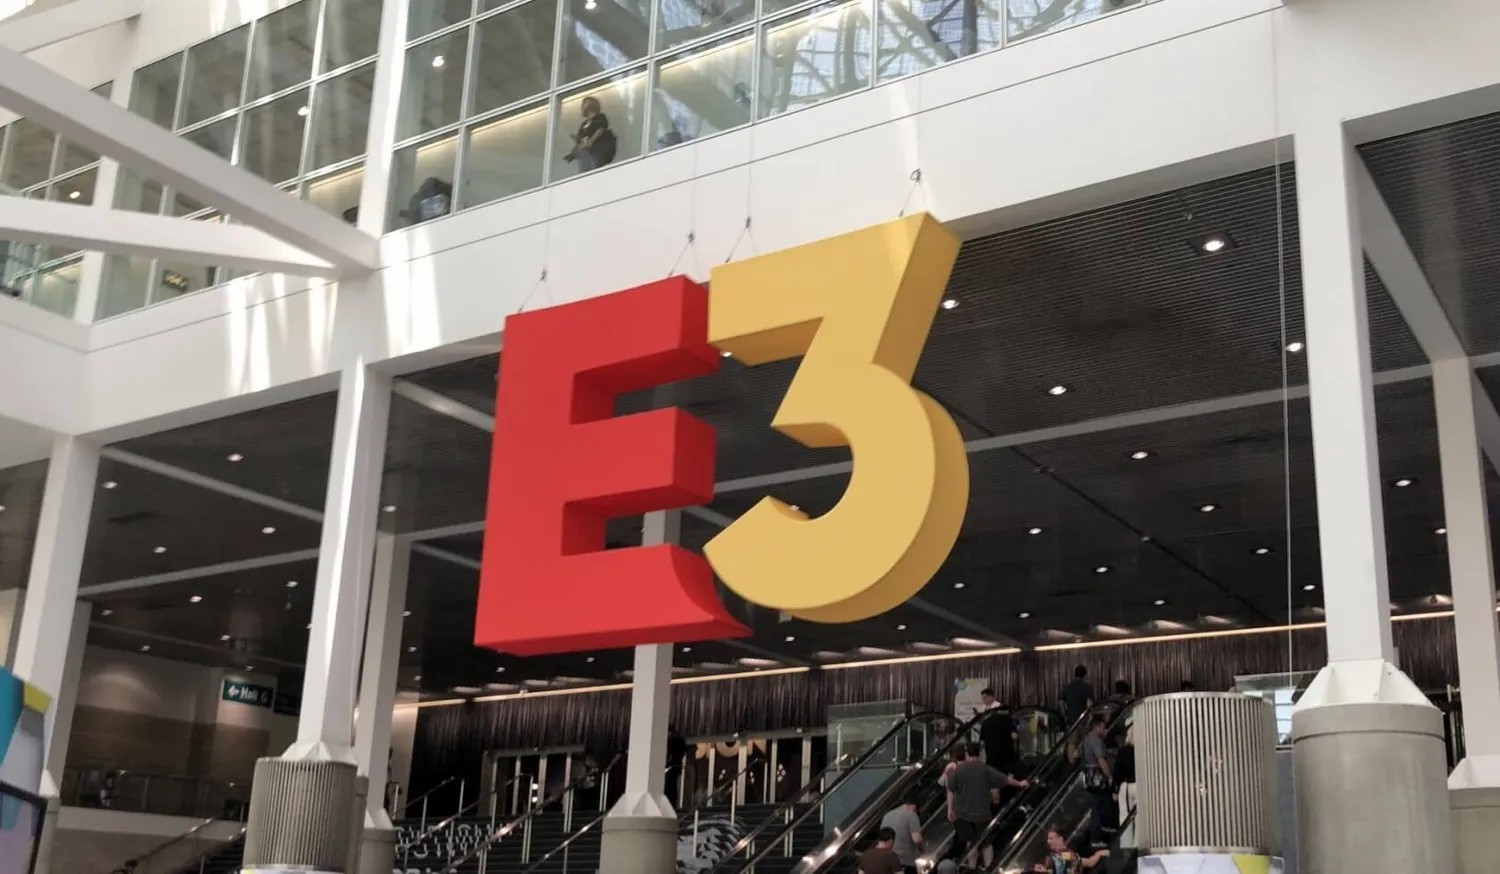 E3展会将在2025年完全重塑 2024年换地点举办